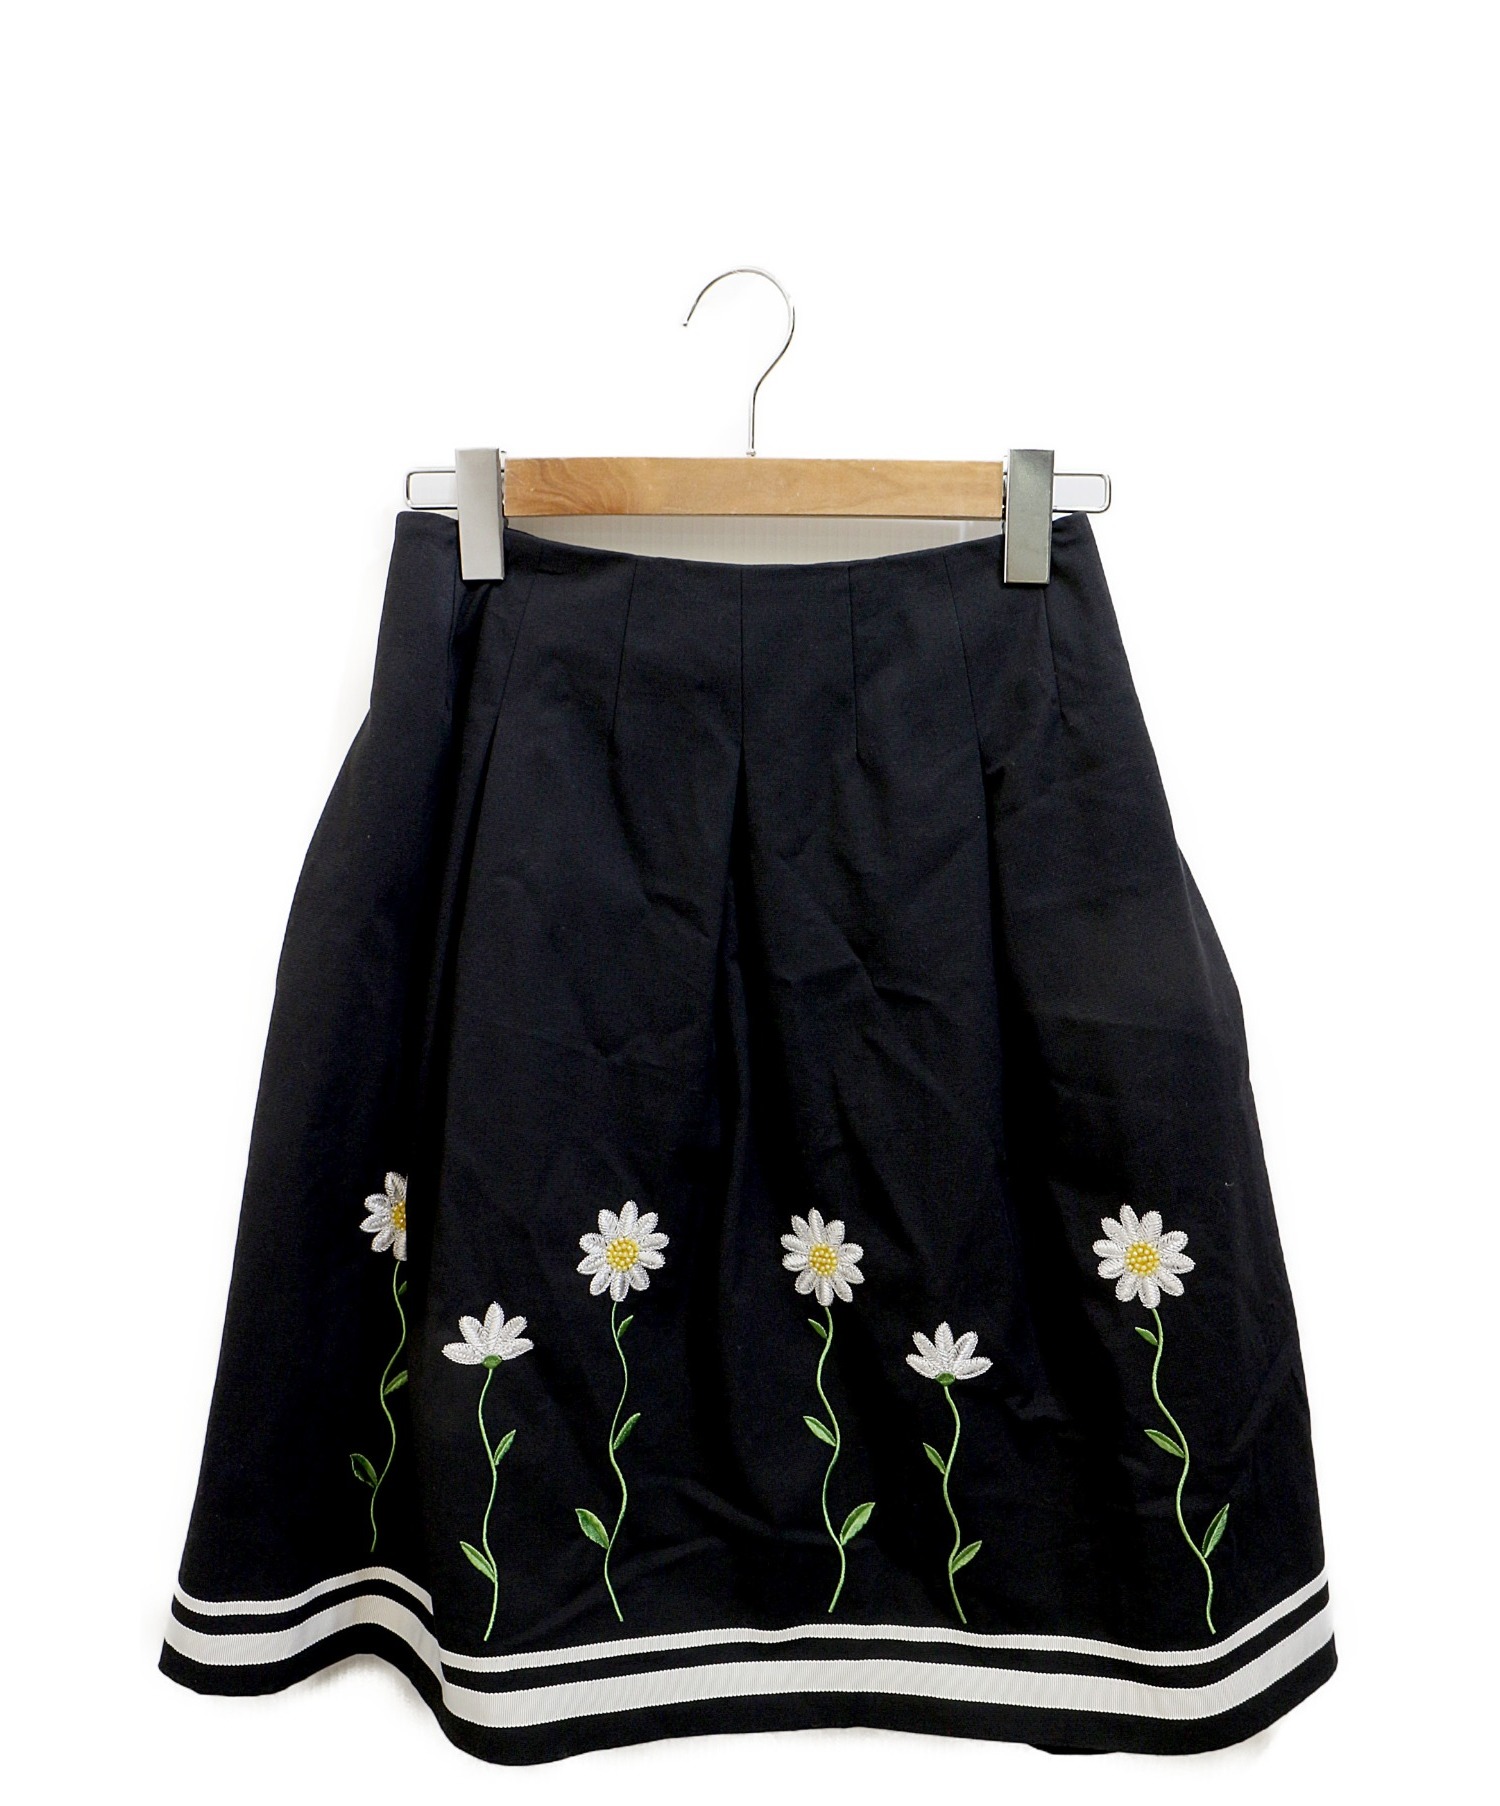 MS GRACY (エムズグレイシー) 刺繍スカート ブラック サイズ:38